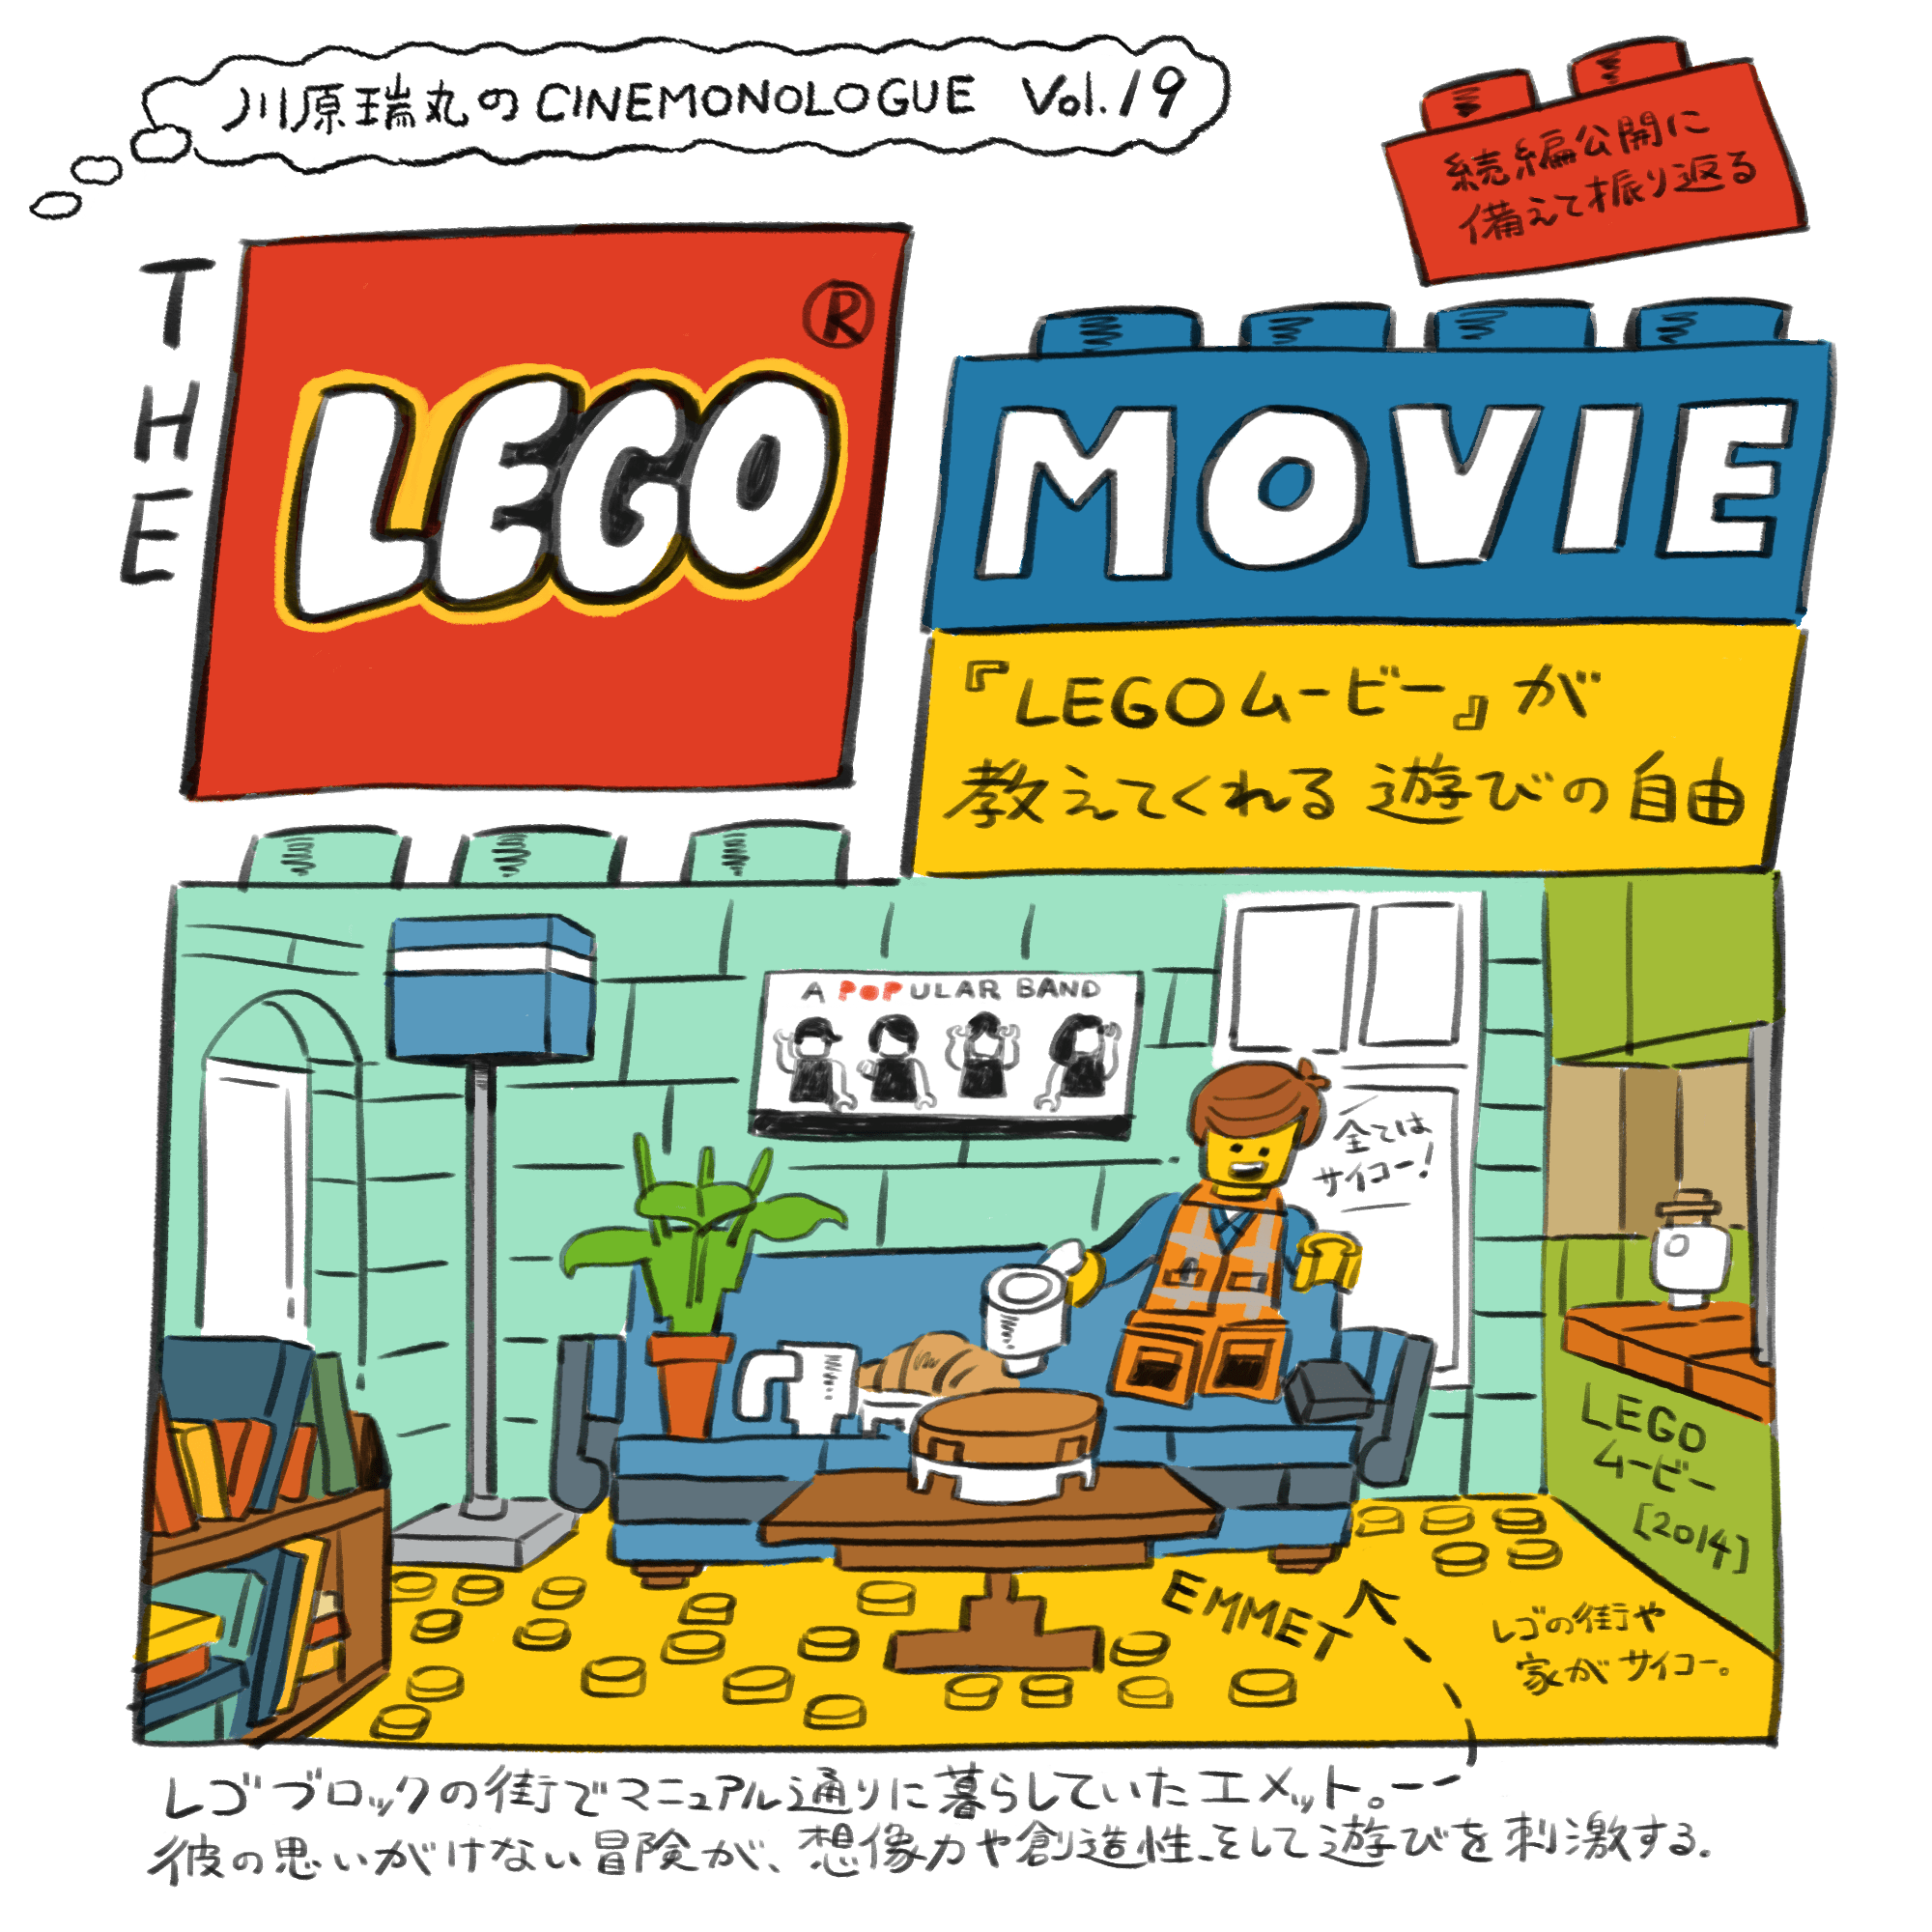 『LEGO ムービー』が教えてくれる遊びの自由【川原瑞丸のCINEMONOLOGUE Vol.19】